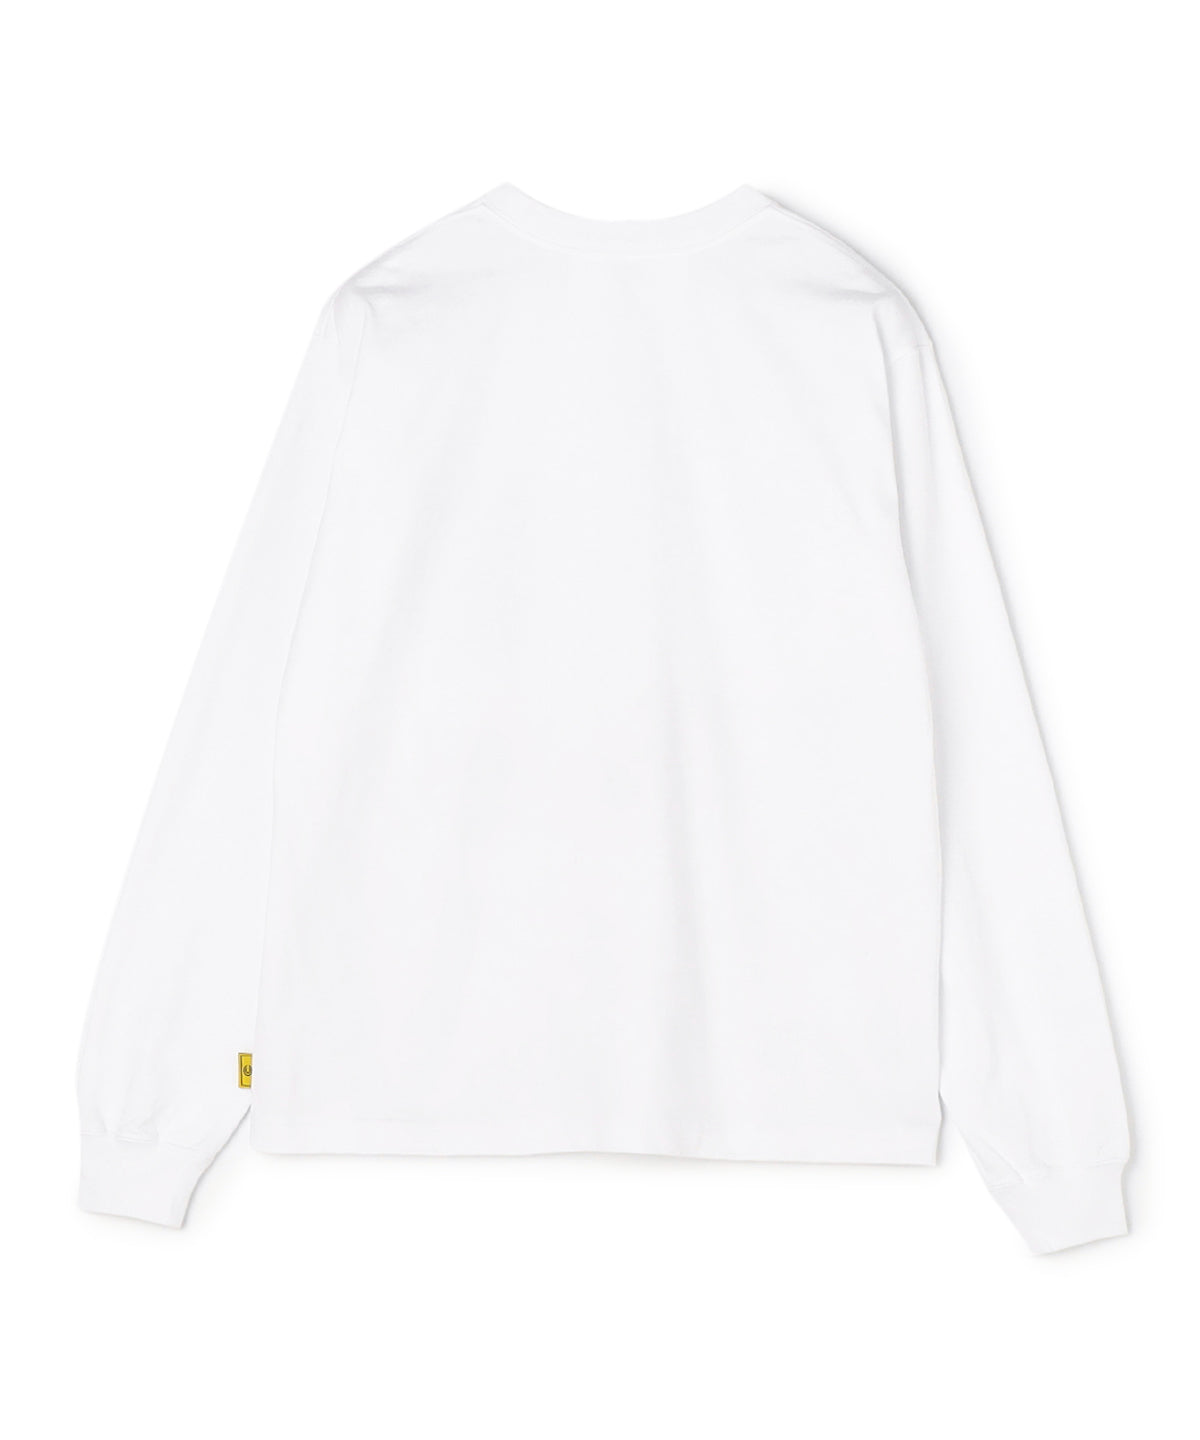 Long Sleeve Pocket T-SHIRTS 002 WHITE